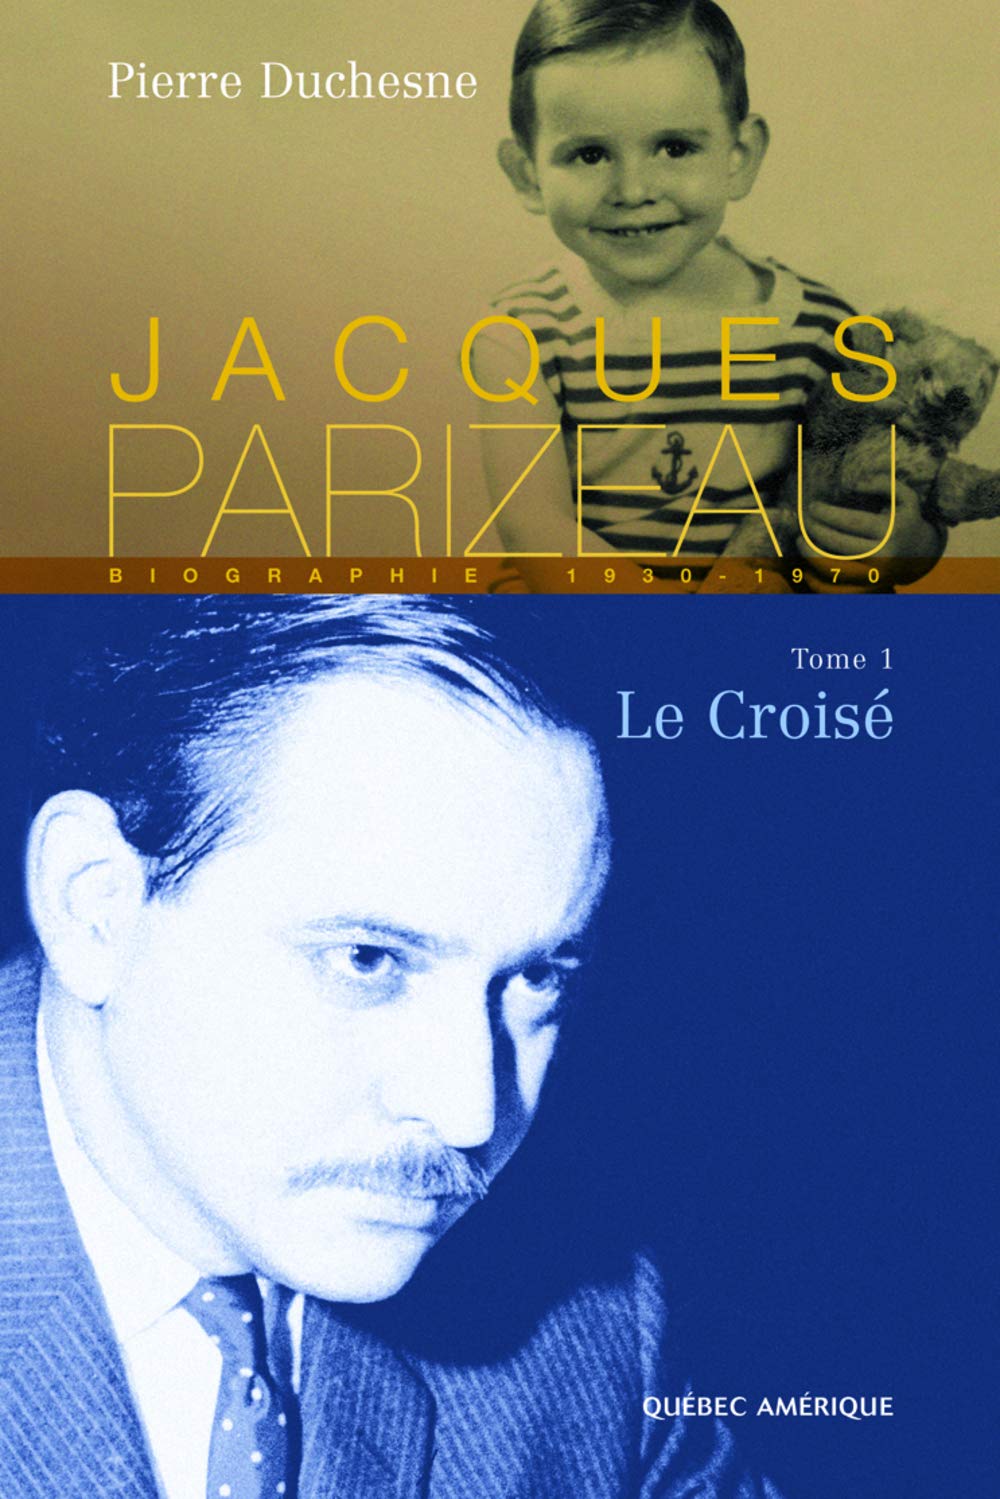 Livre ISBN 2764401051 Jacques Parizeau # 1 : Le croisé (Pierre Duchesne)